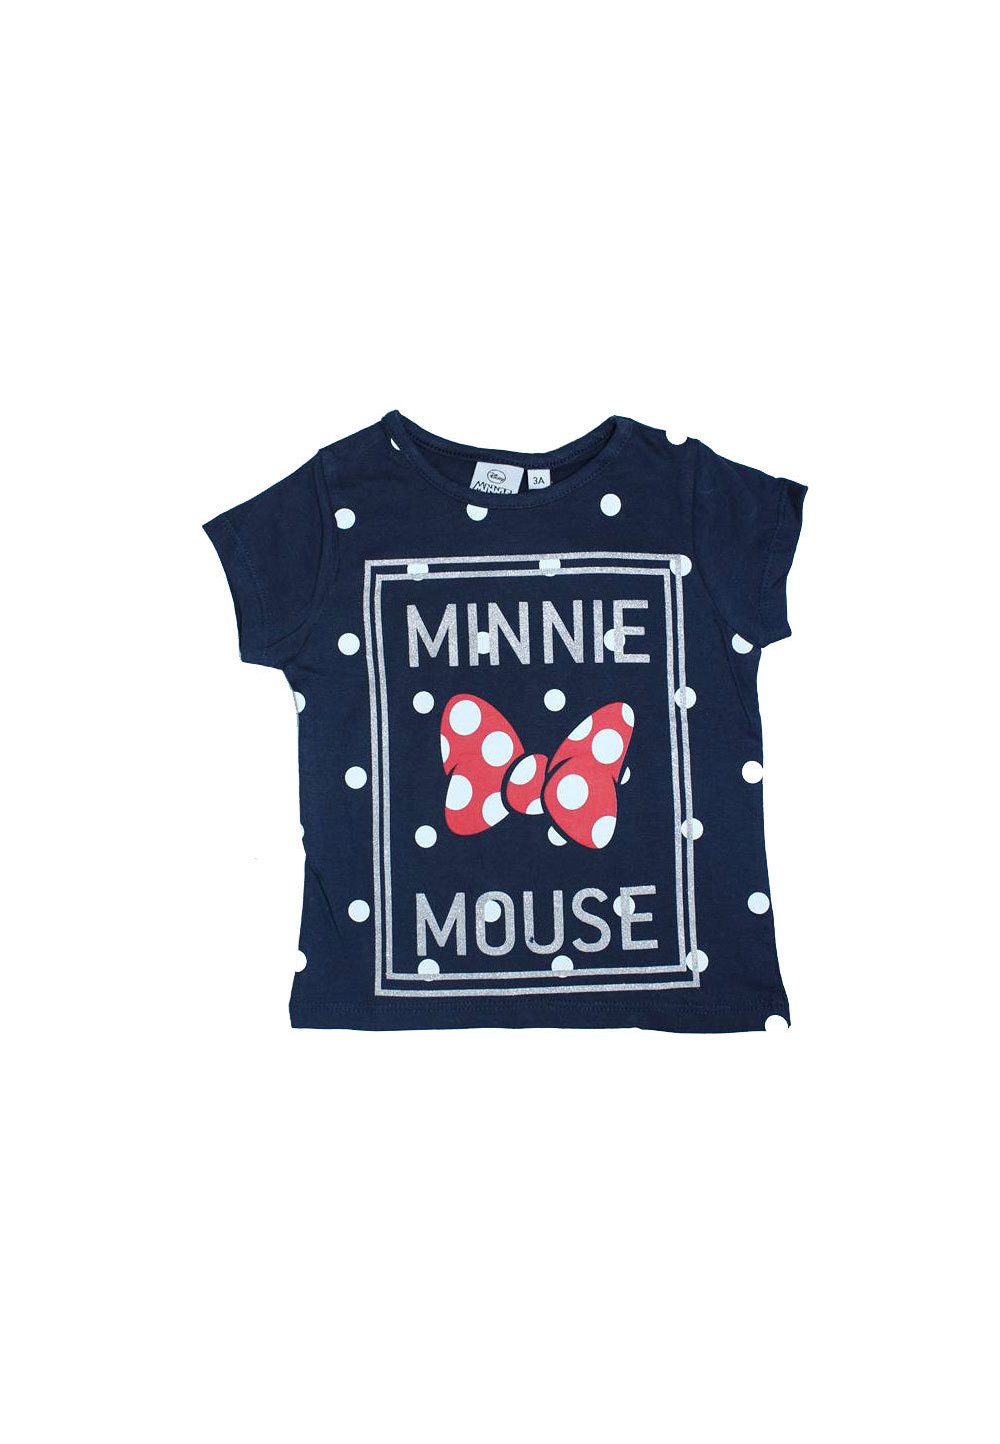 Tricou, bluemarin cu buline, Minnie Mouse imagine